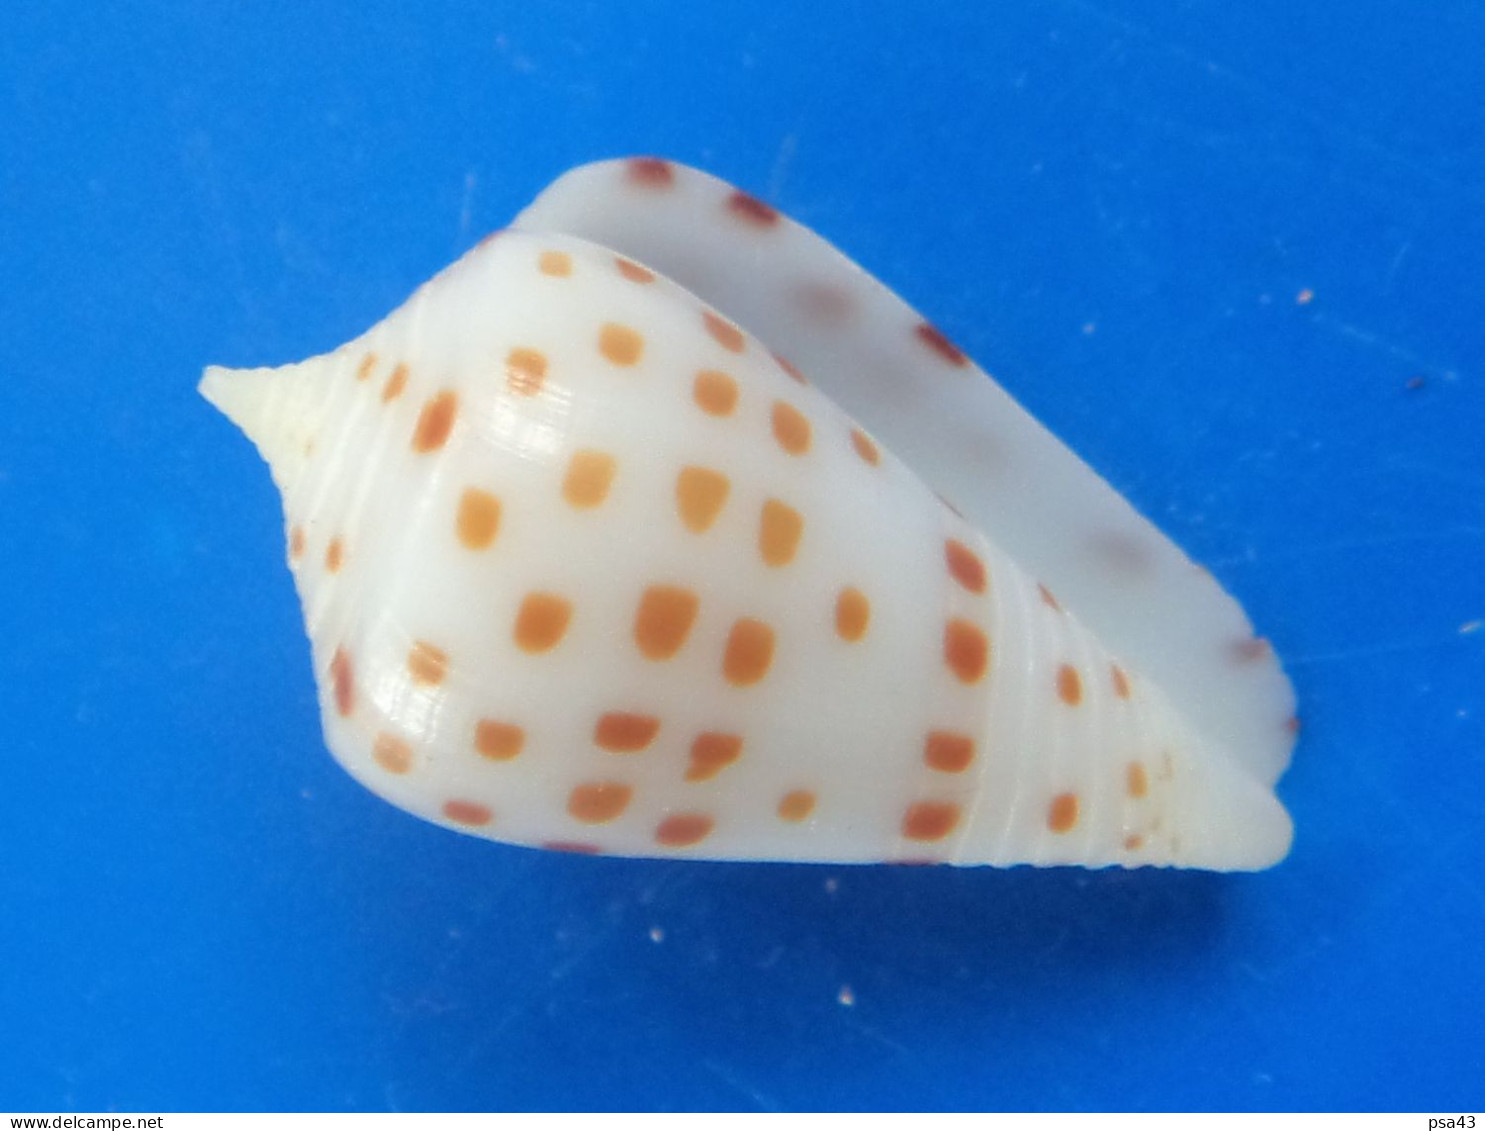 Conus Eburneus CRASSUS Nlle Calédonie 20,6mm GEM  RARE N1 - Conchiglie